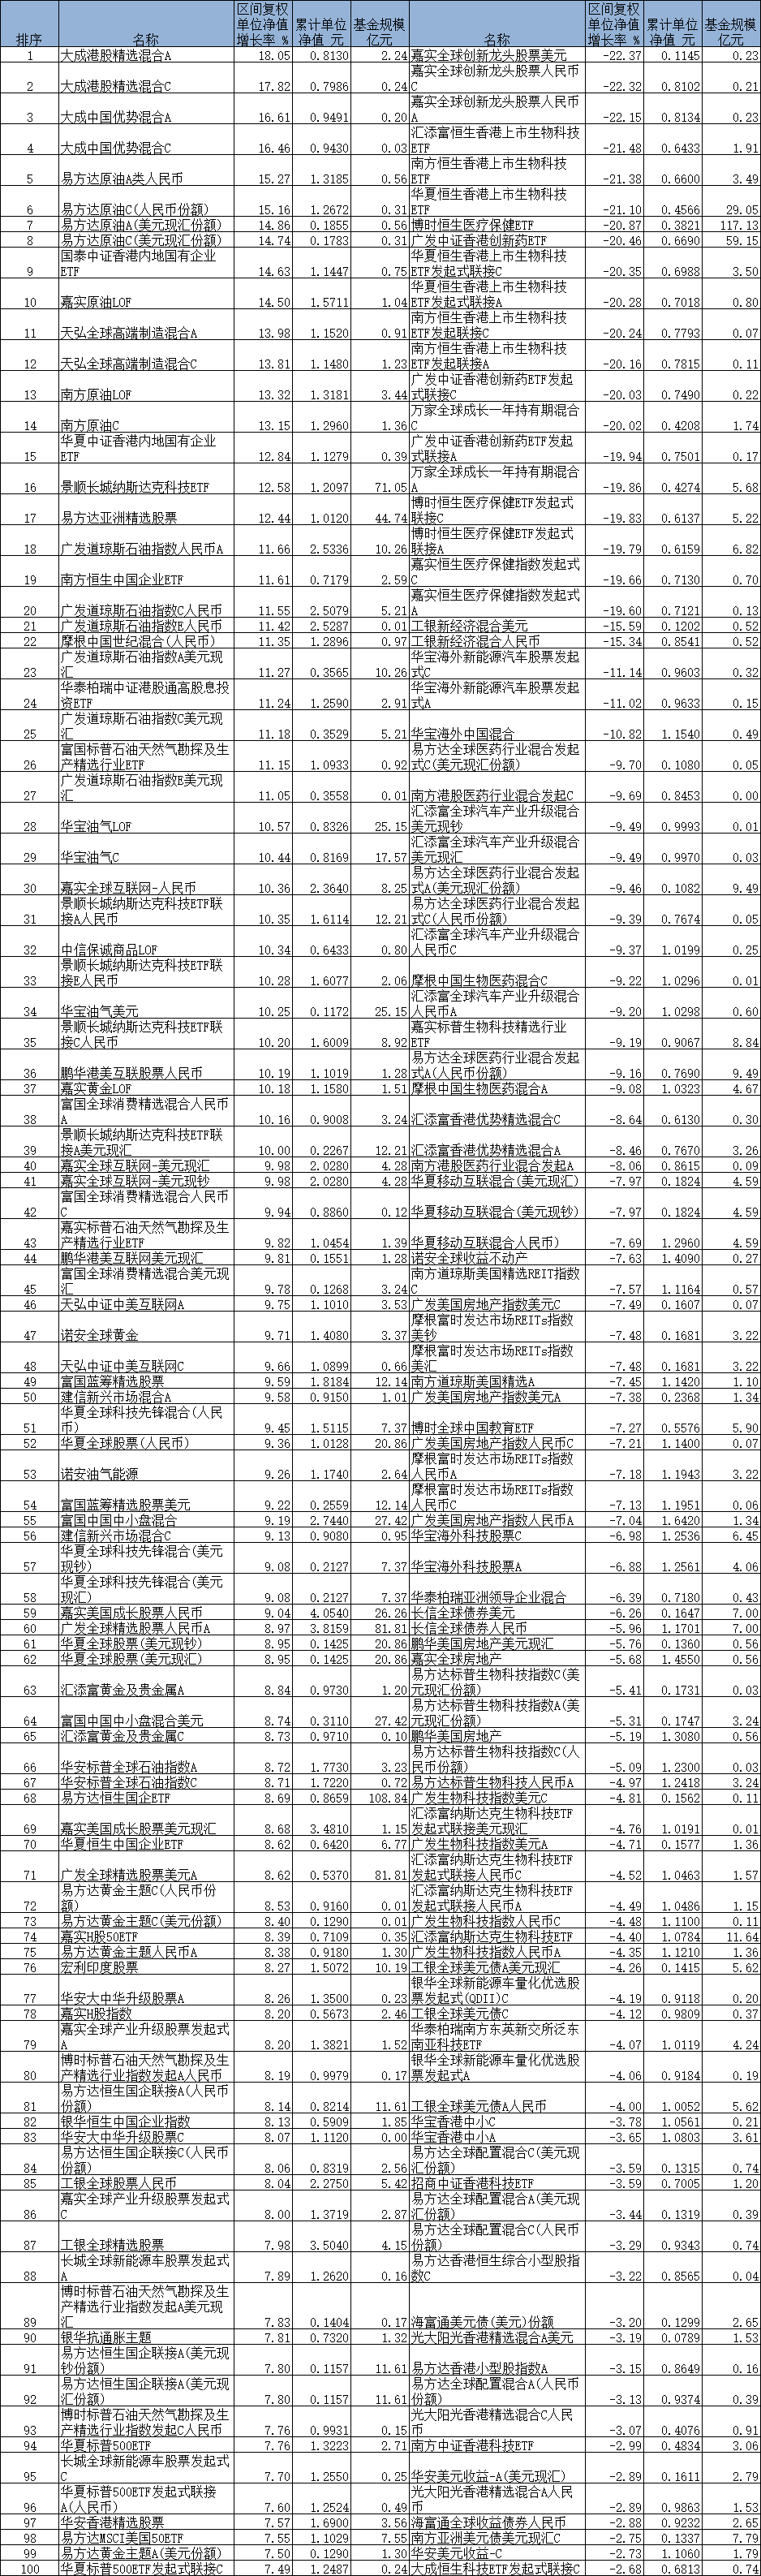 前4月39只QDII涨超10% 柏杨管理基金独揽涨幅前4名